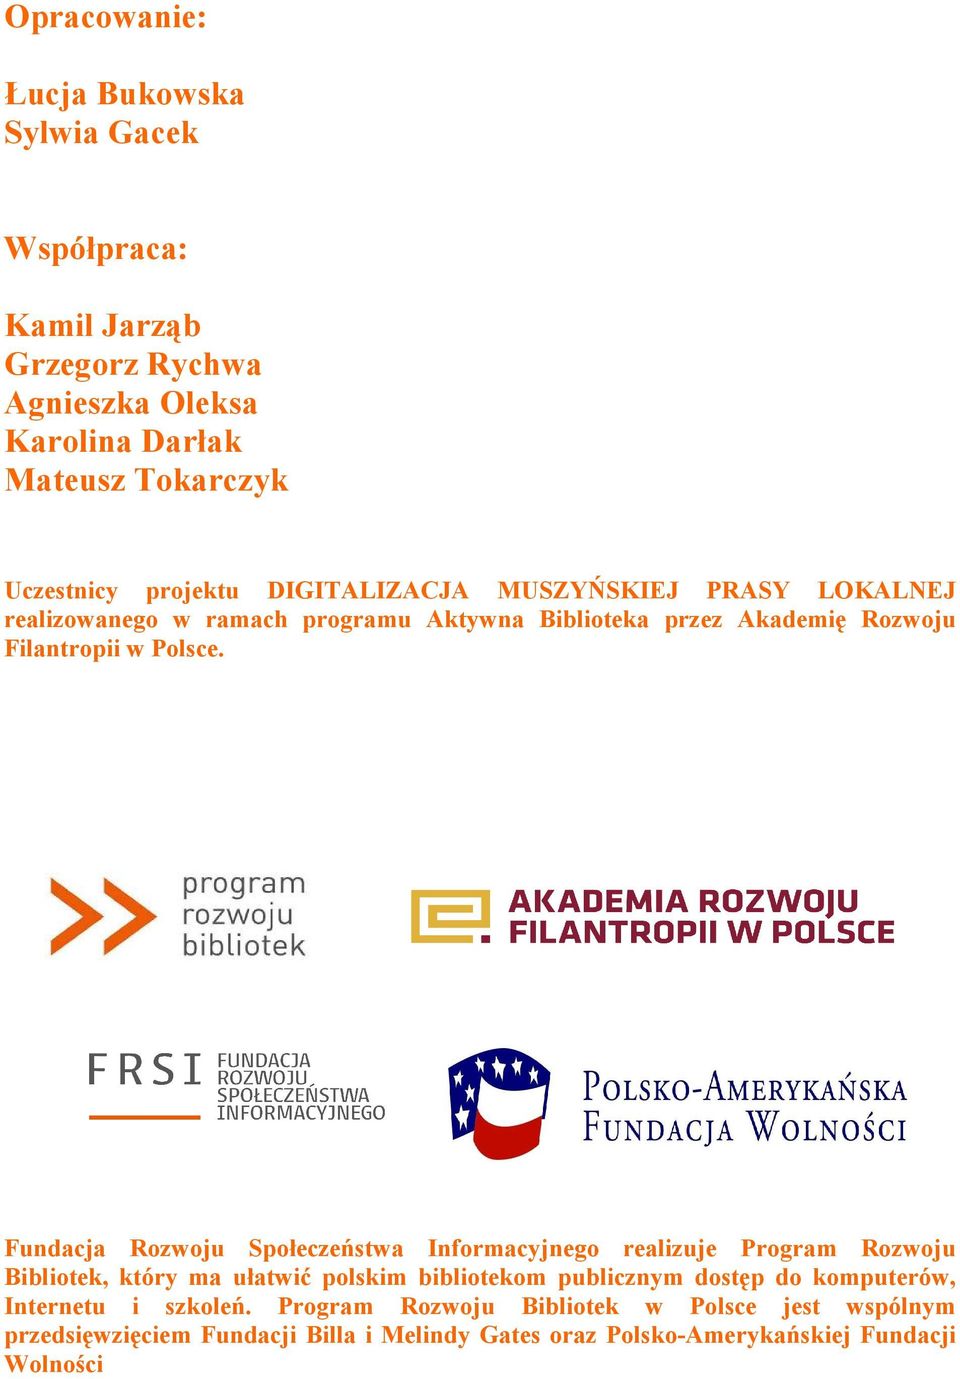 Fundacja Rozwoju Społeczeństwa Informacyjnego realizuje Program Rozwoju Bibliotek, który ma ułatwić polskim bibliotekom publicznym dostęp do